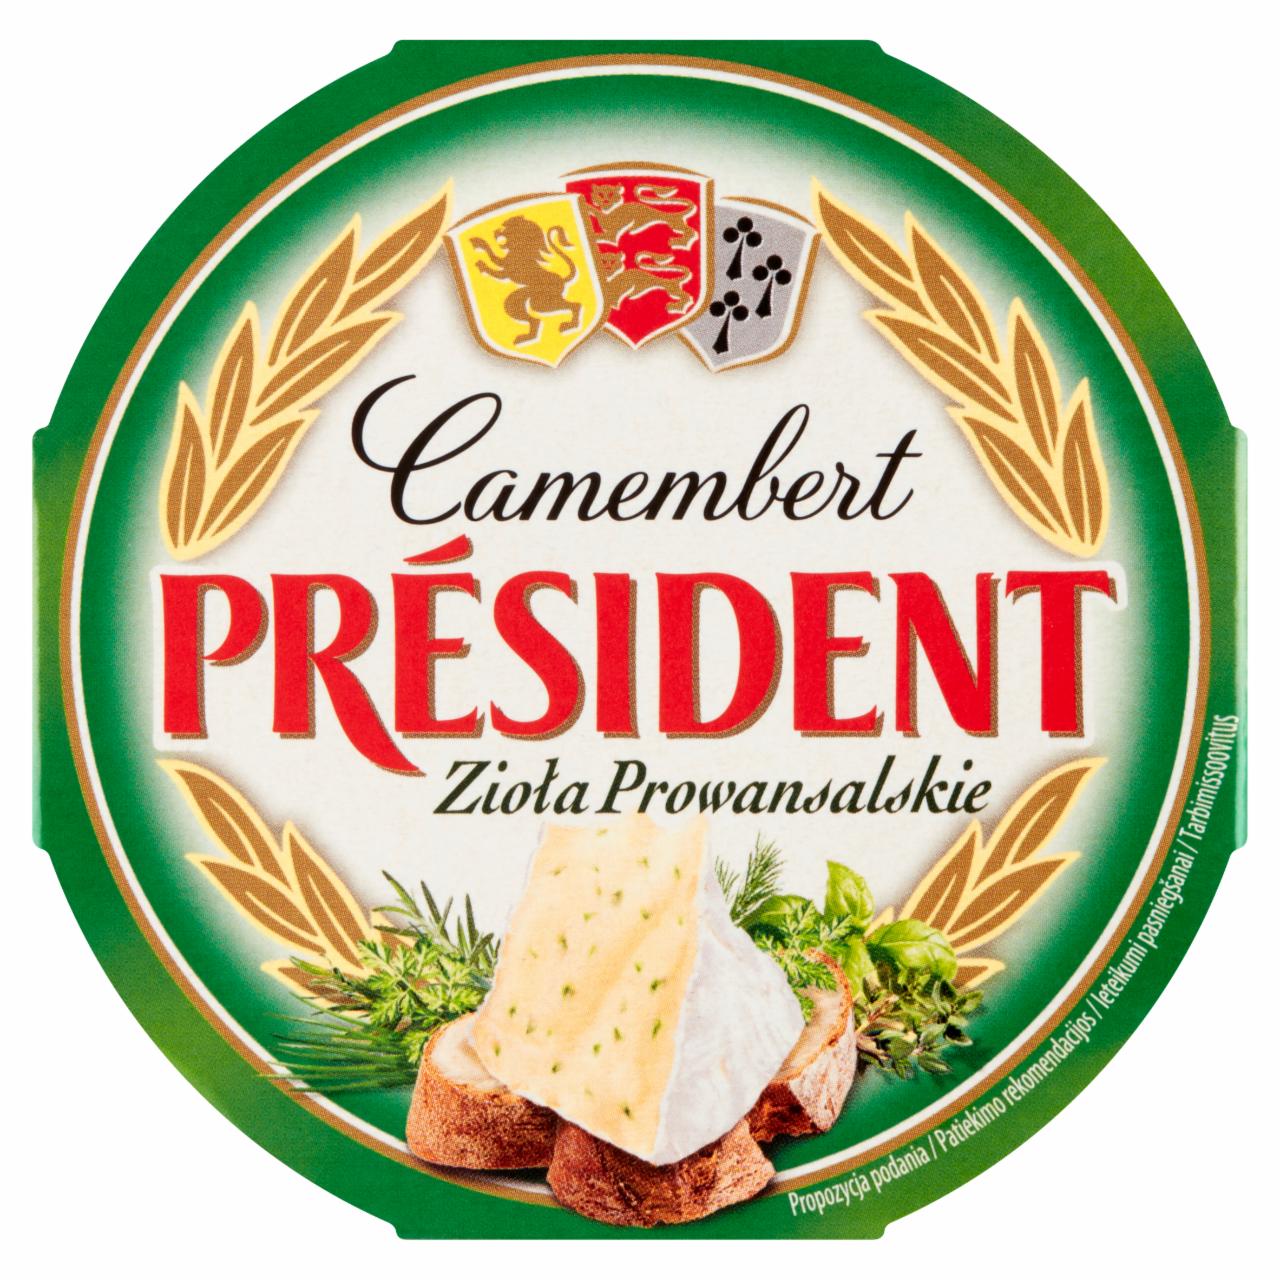 Fotografie - Camembert zioła prowansalskie (provensálské bylinky) Président